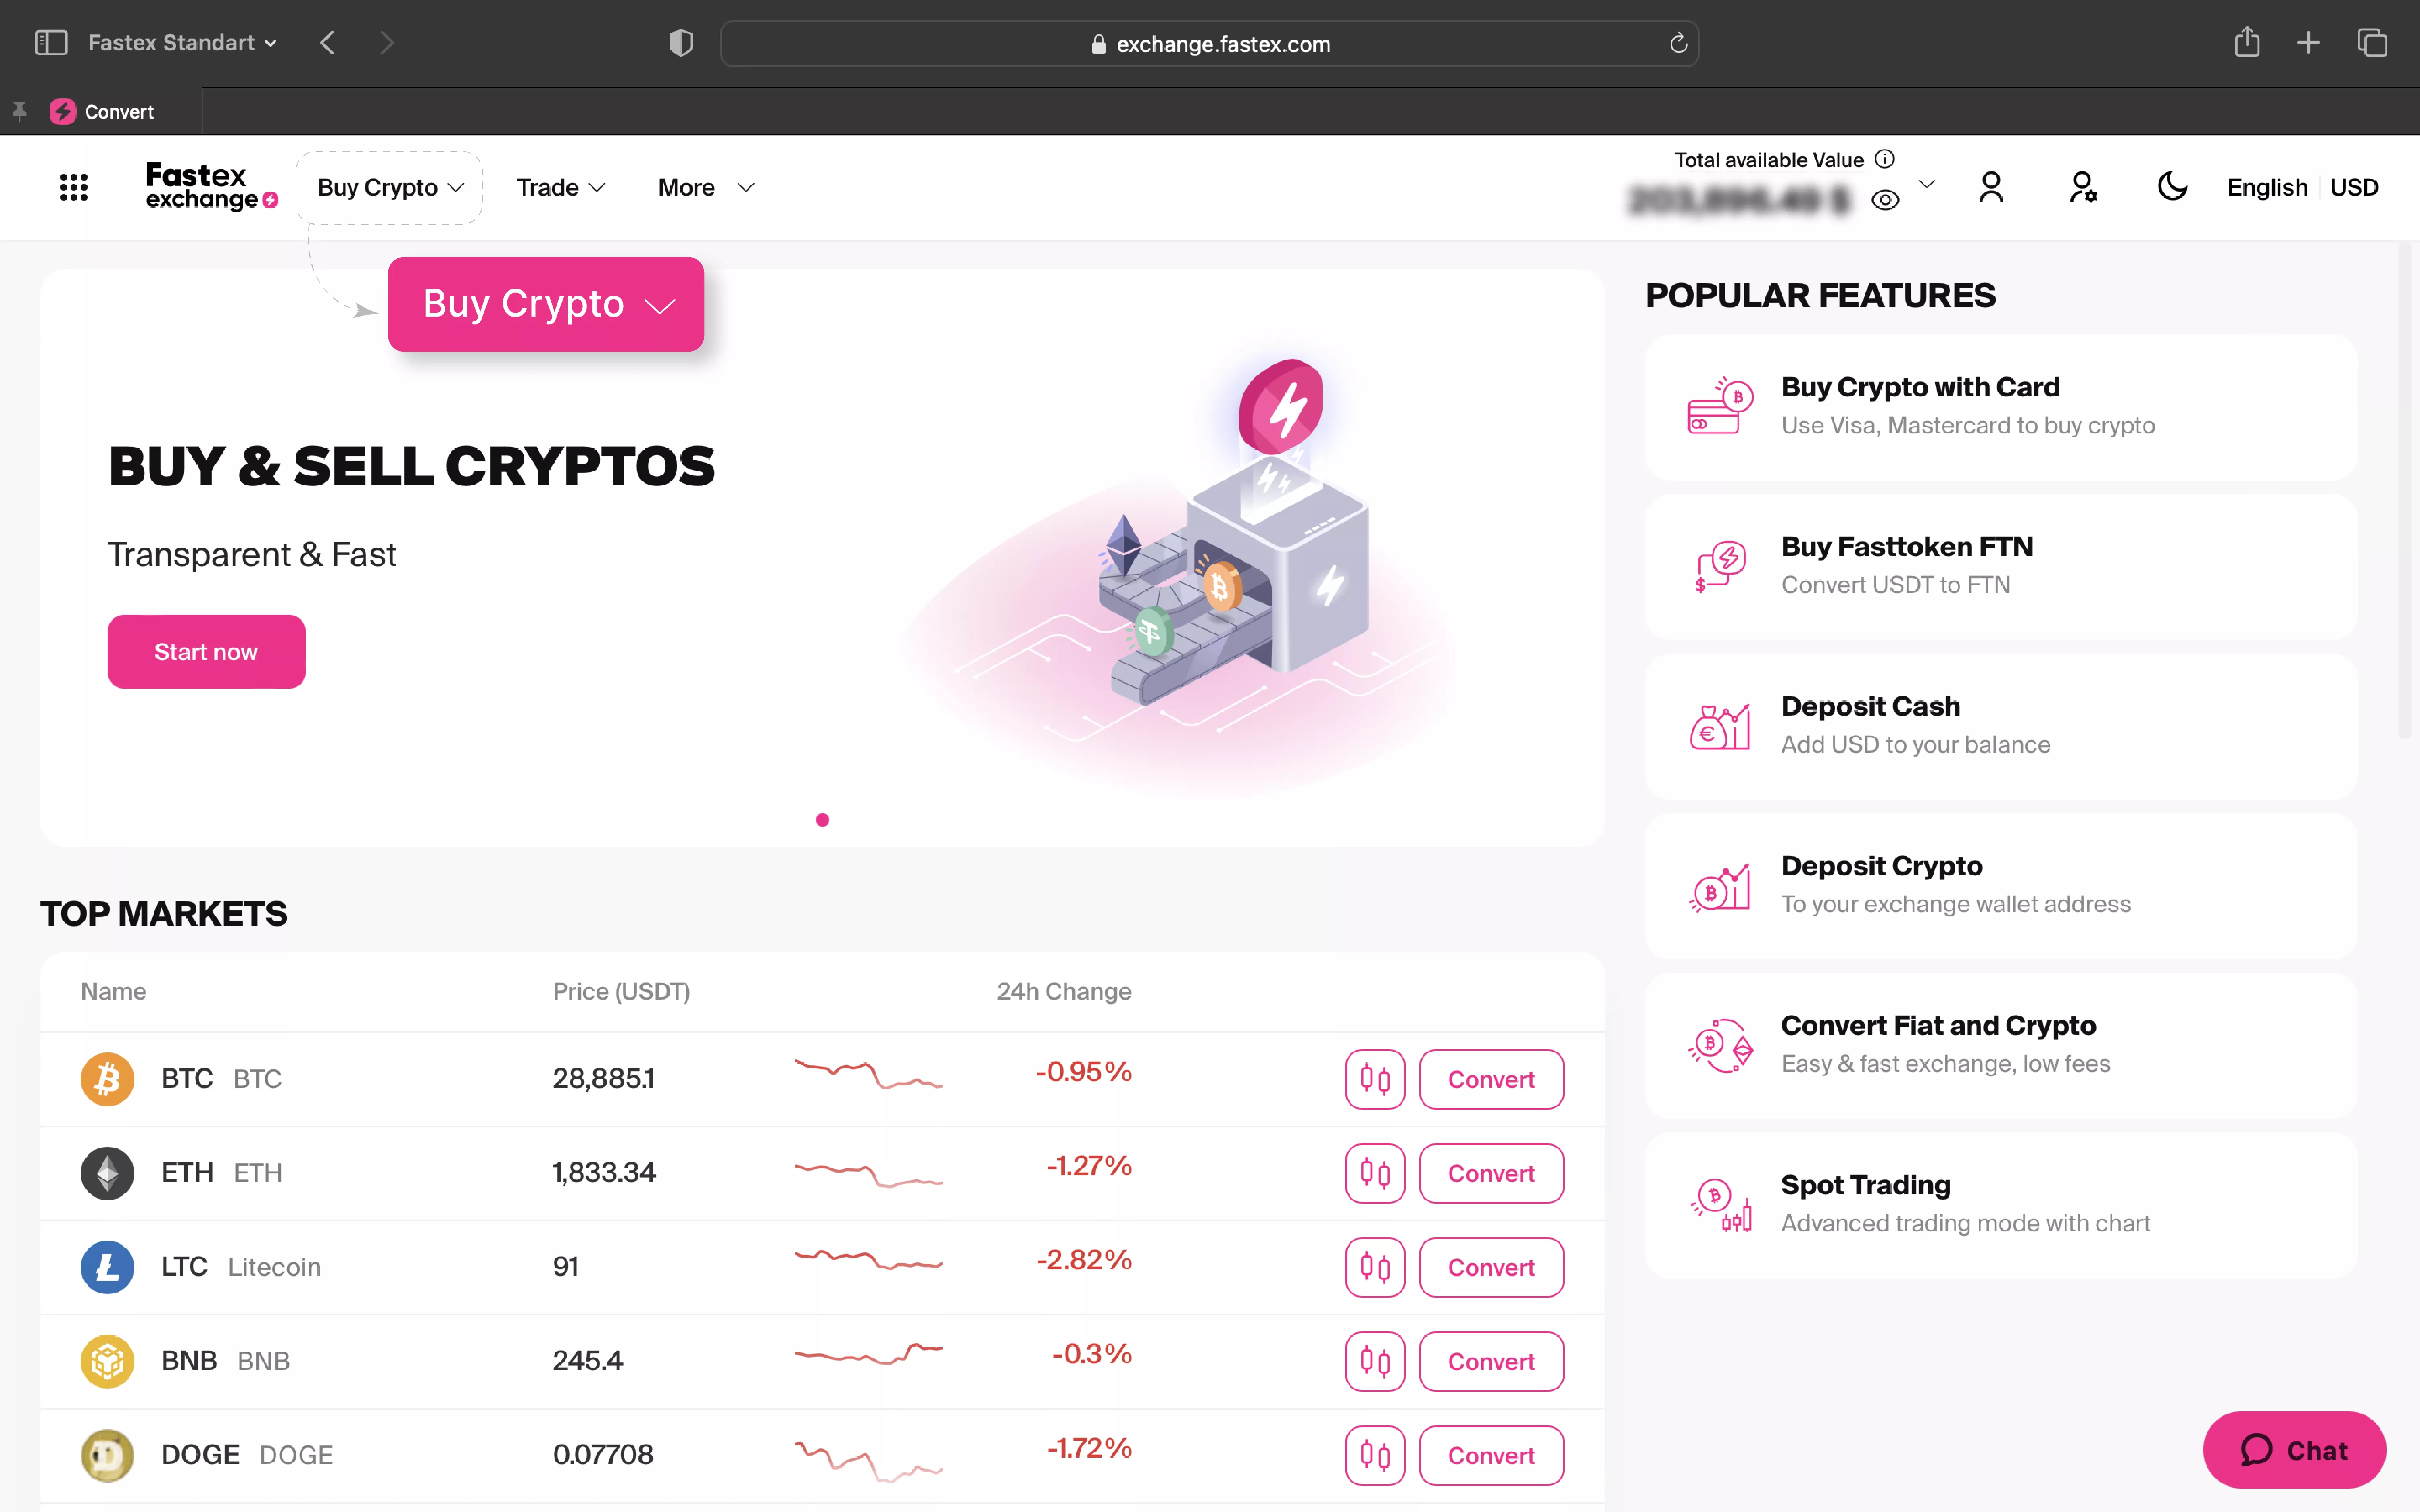 Buy crypto button